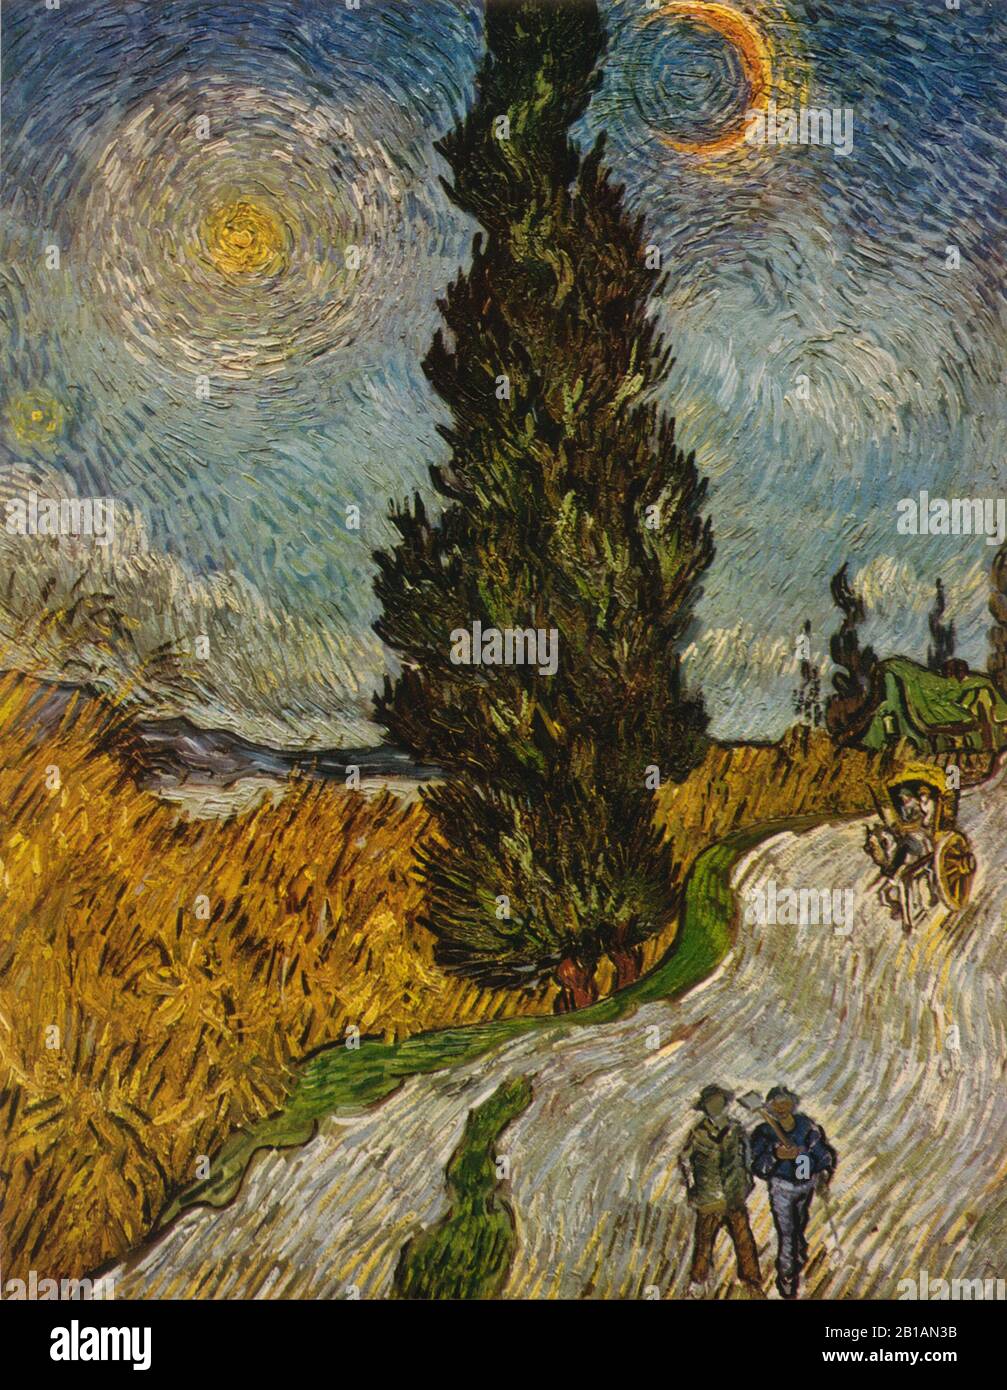 Strada con Cipressi - dipinto di Vincent van Gogh - Immagine Ad Altissima risoluzione e qualità Foto Stock